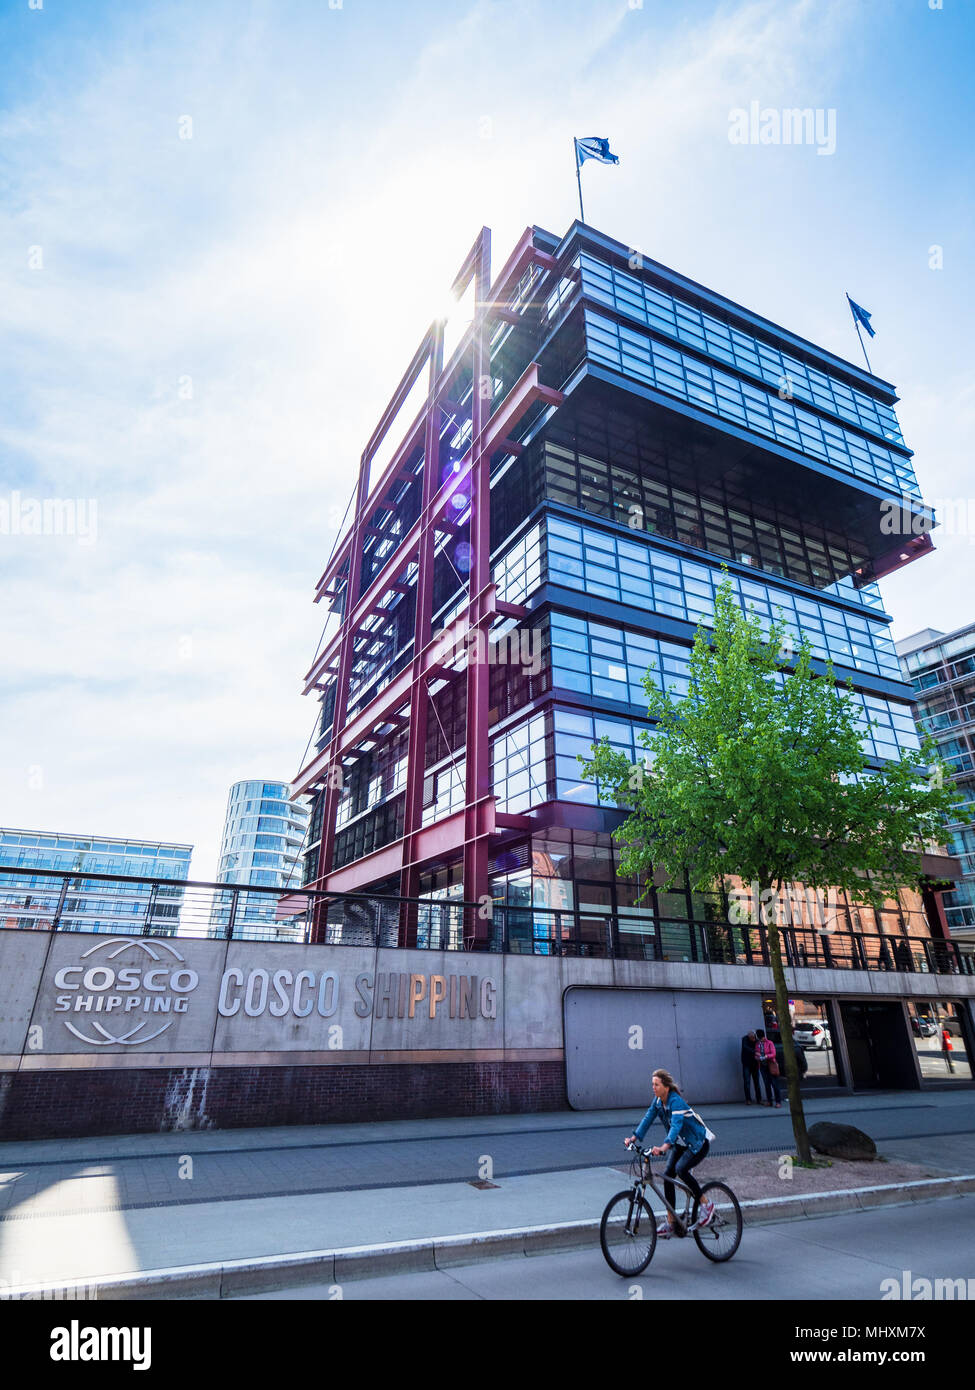 Des bureaux maritimes Cosco à Hambourg HafenCity - district - Cosco China Ocean Shipping Company, détenue par l'État chinois est une entreprise de logistique & expédition Banque D'Images